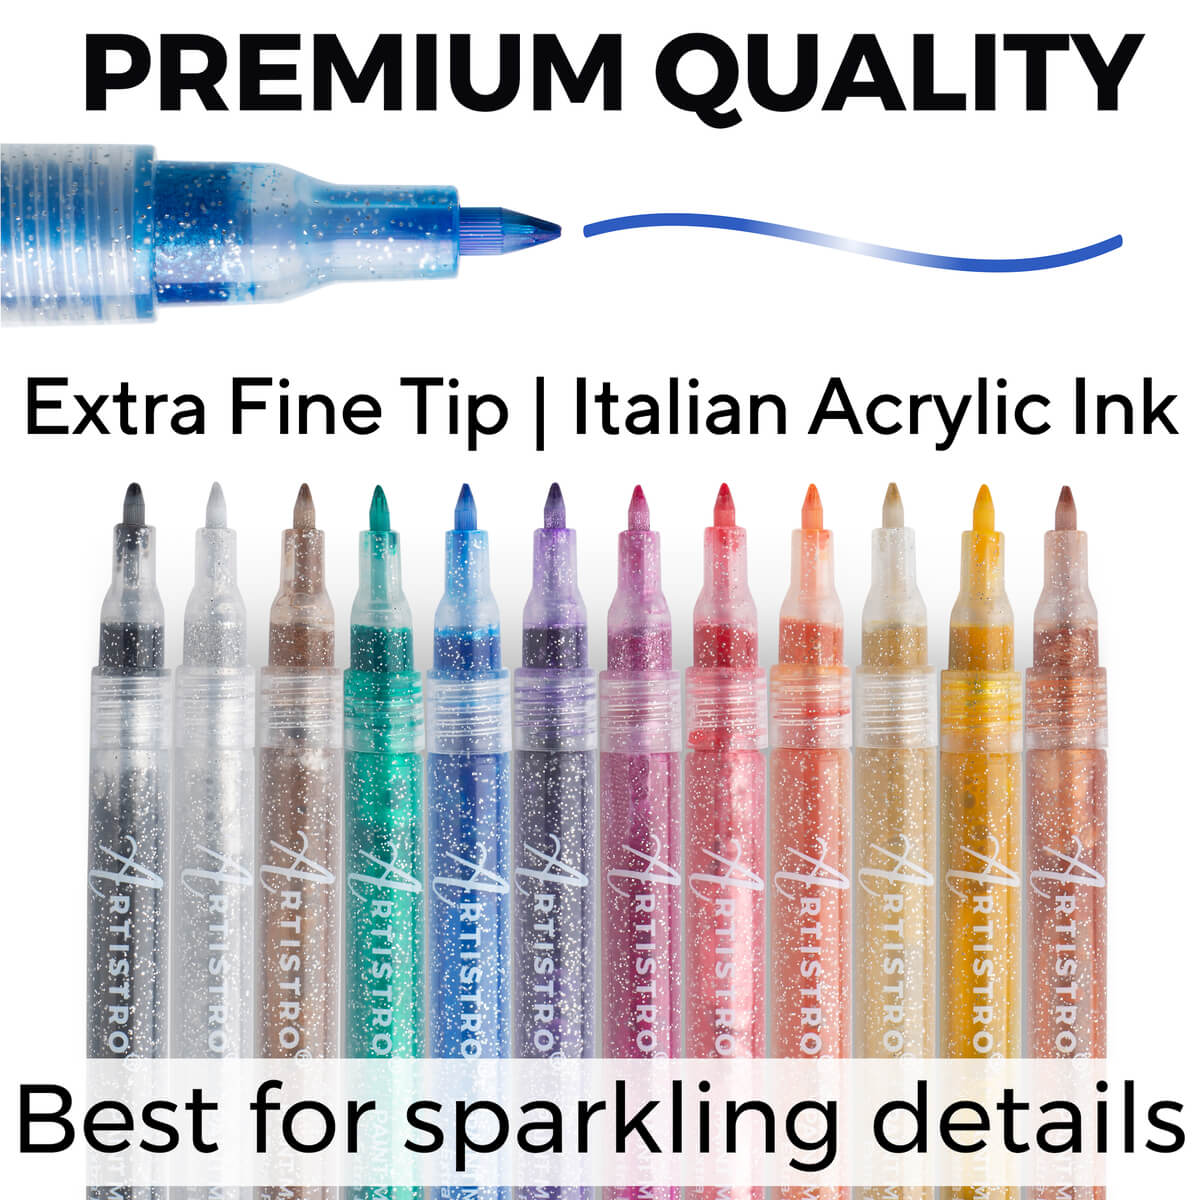 Artistro art and craft bundles: Gorgeous Paint Pen Art Bundle